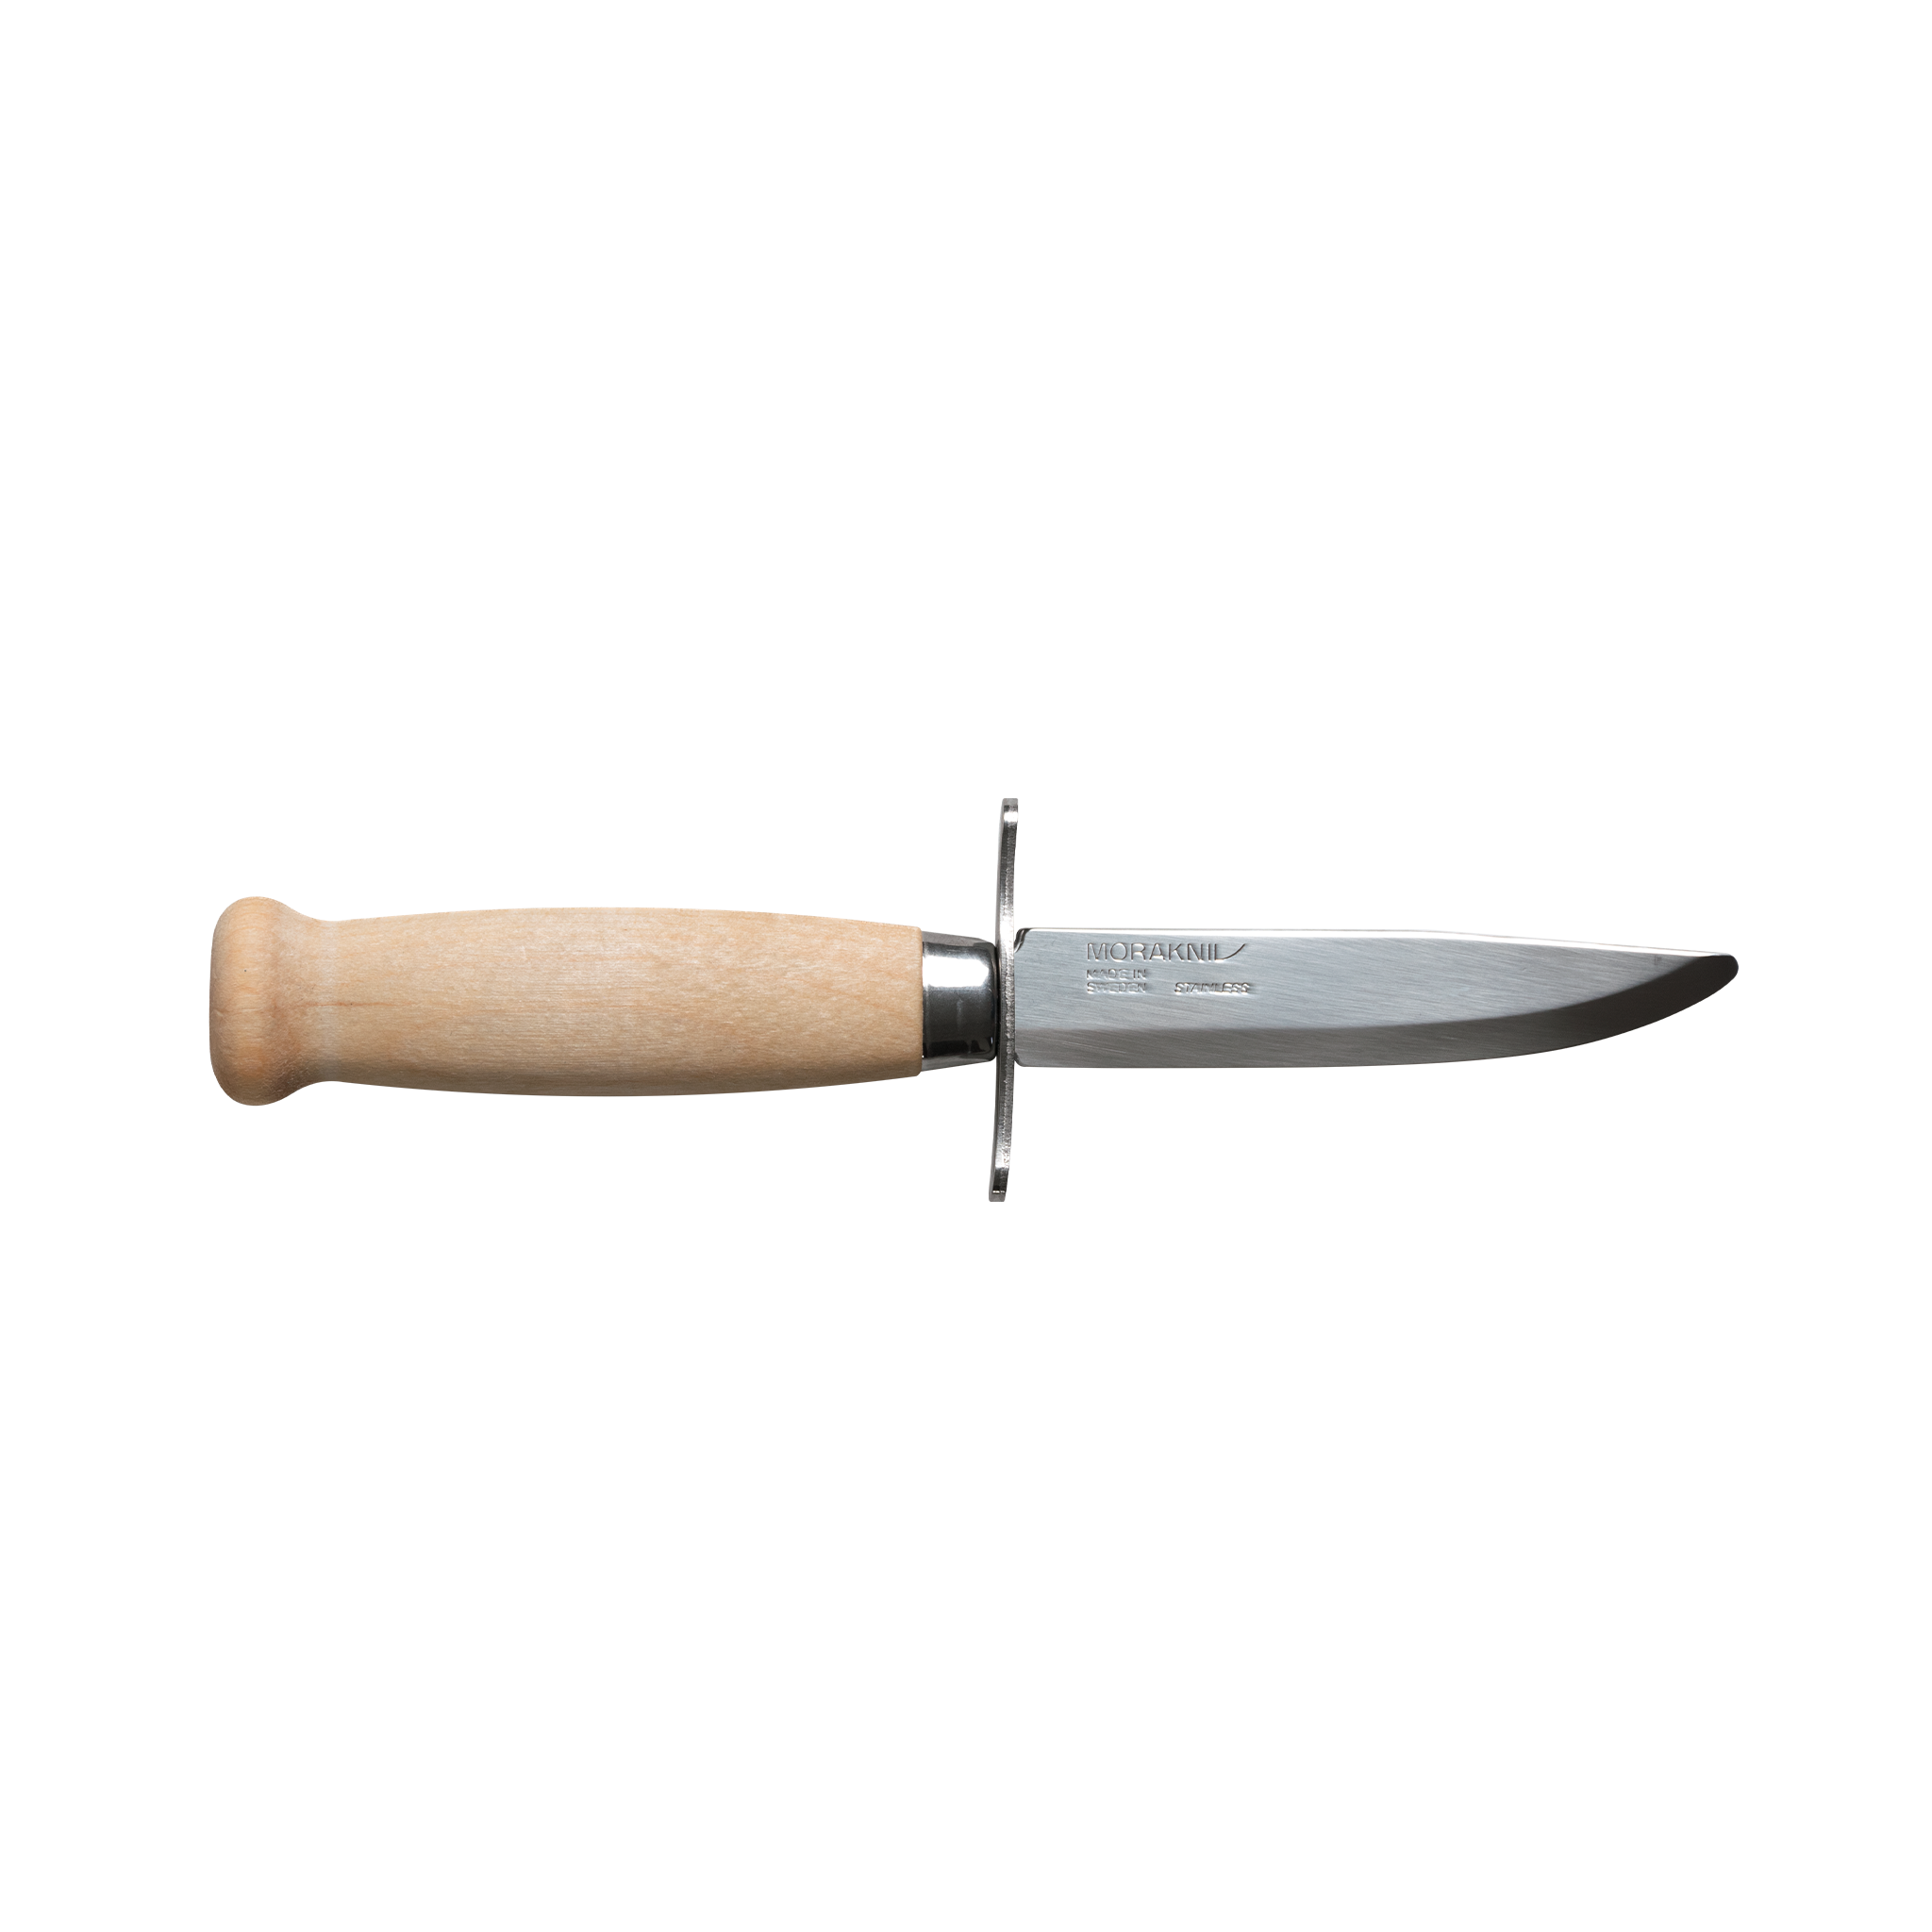 Morakniv | Scout 39 Safe (S) Knife